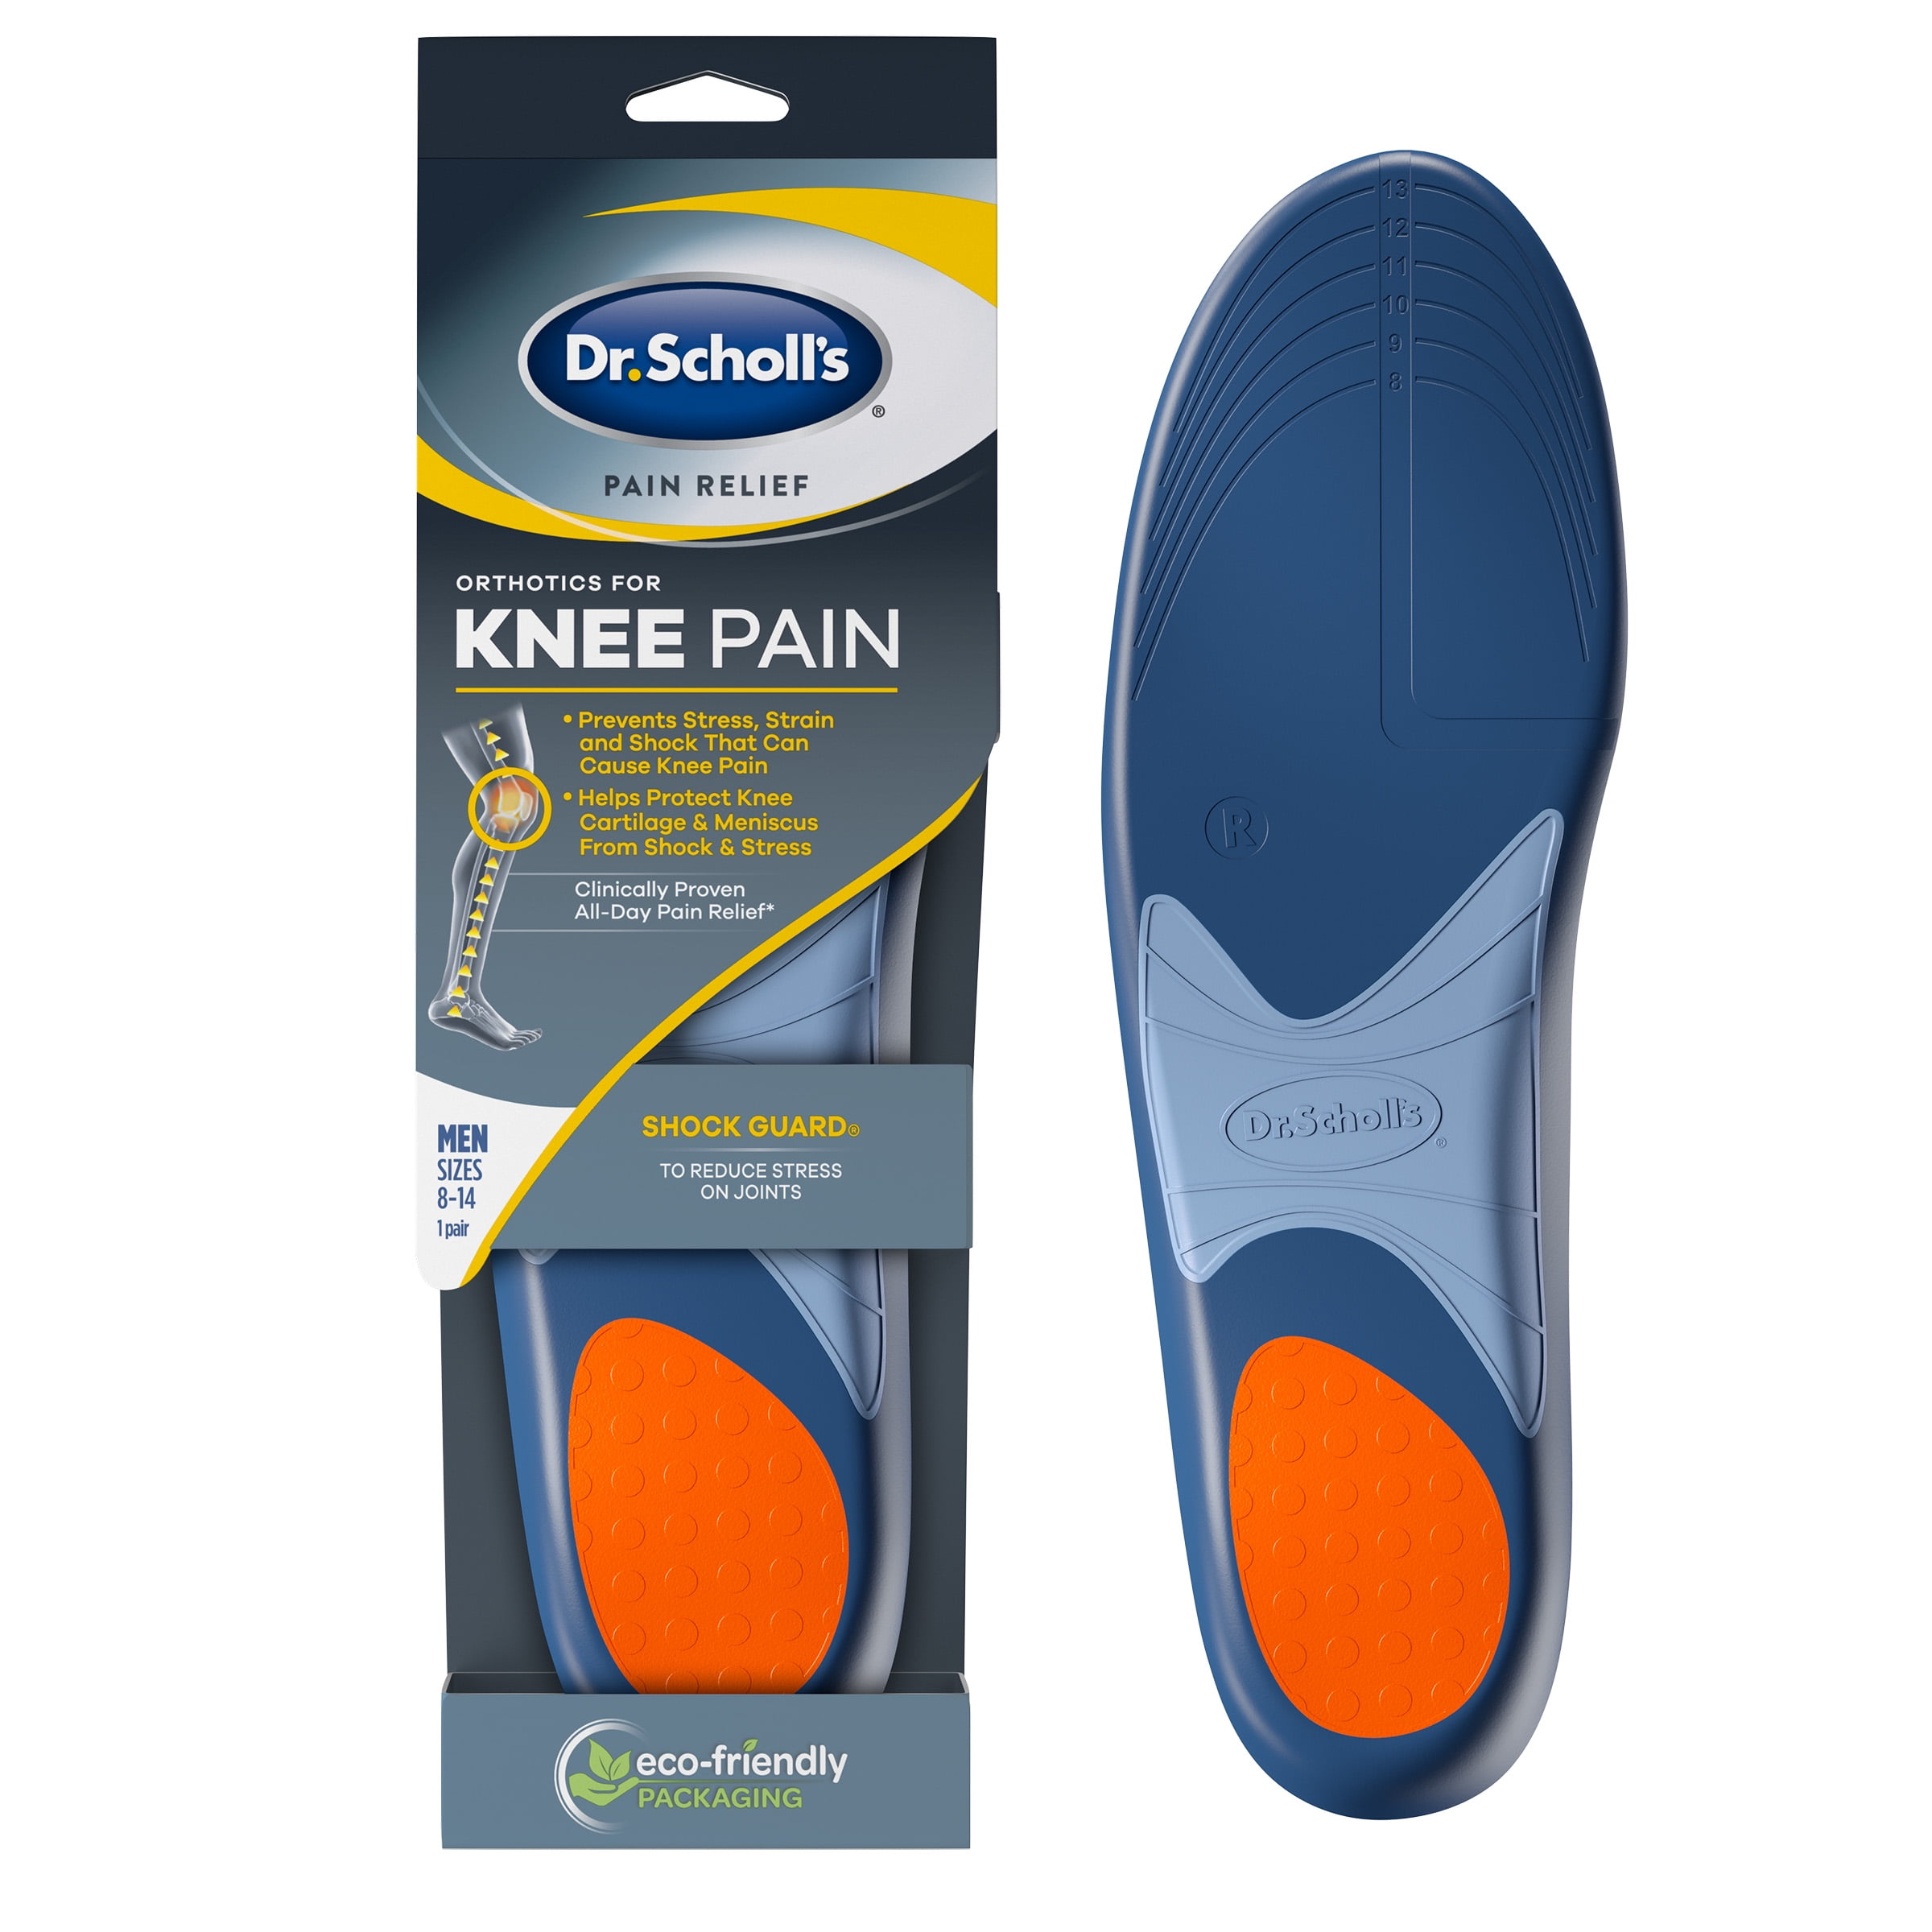 Kameel Geaccepteerd Afdeling Dr. Scholl's KNEE Pain Relief Orthotics, 1 Pair (Men's 8-14) - Walmart.com